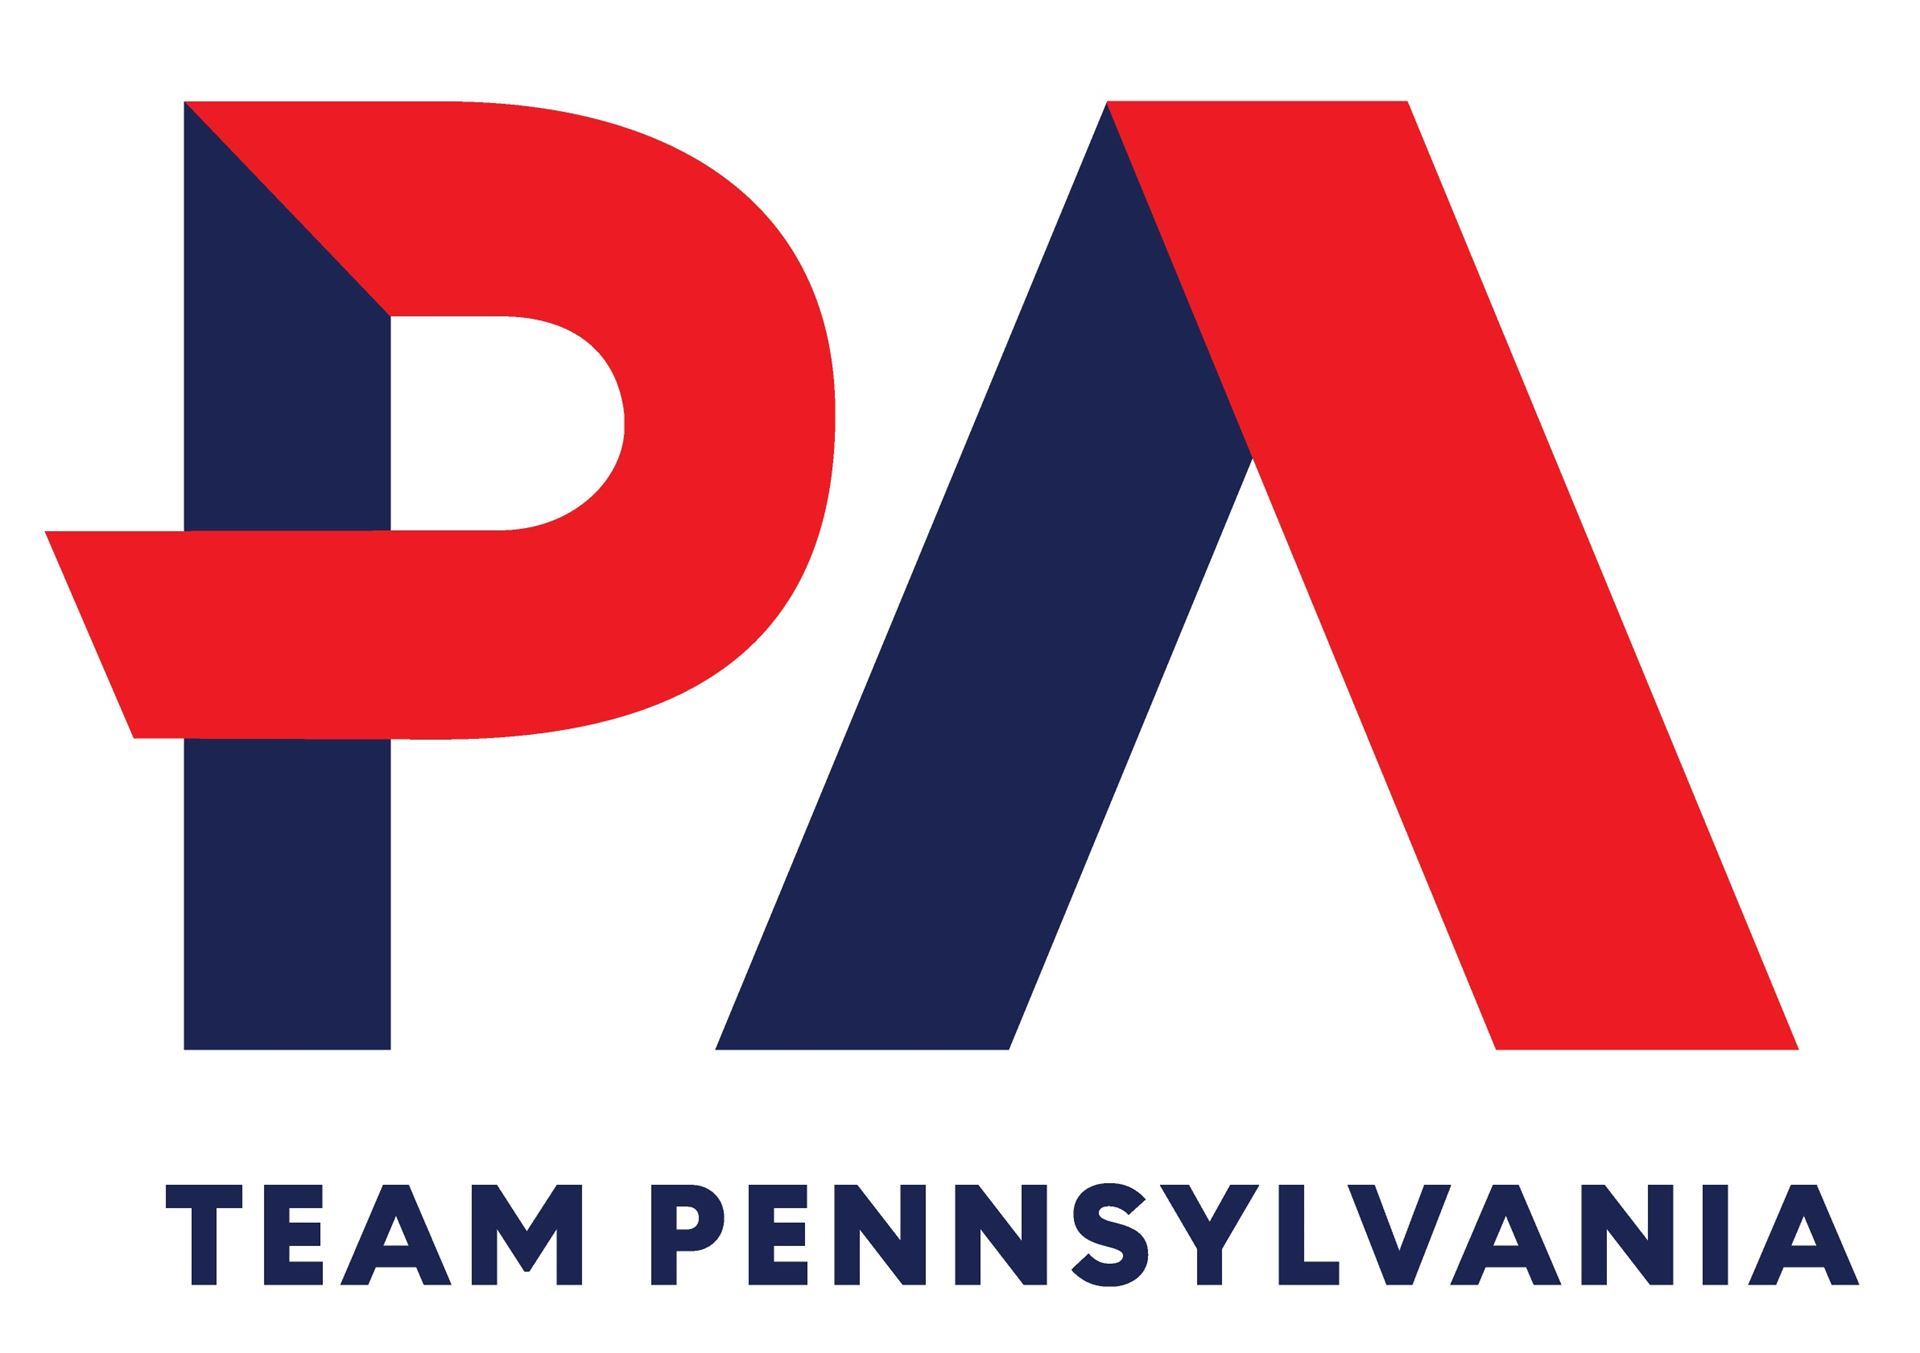 Logo: Team Pennsylvania